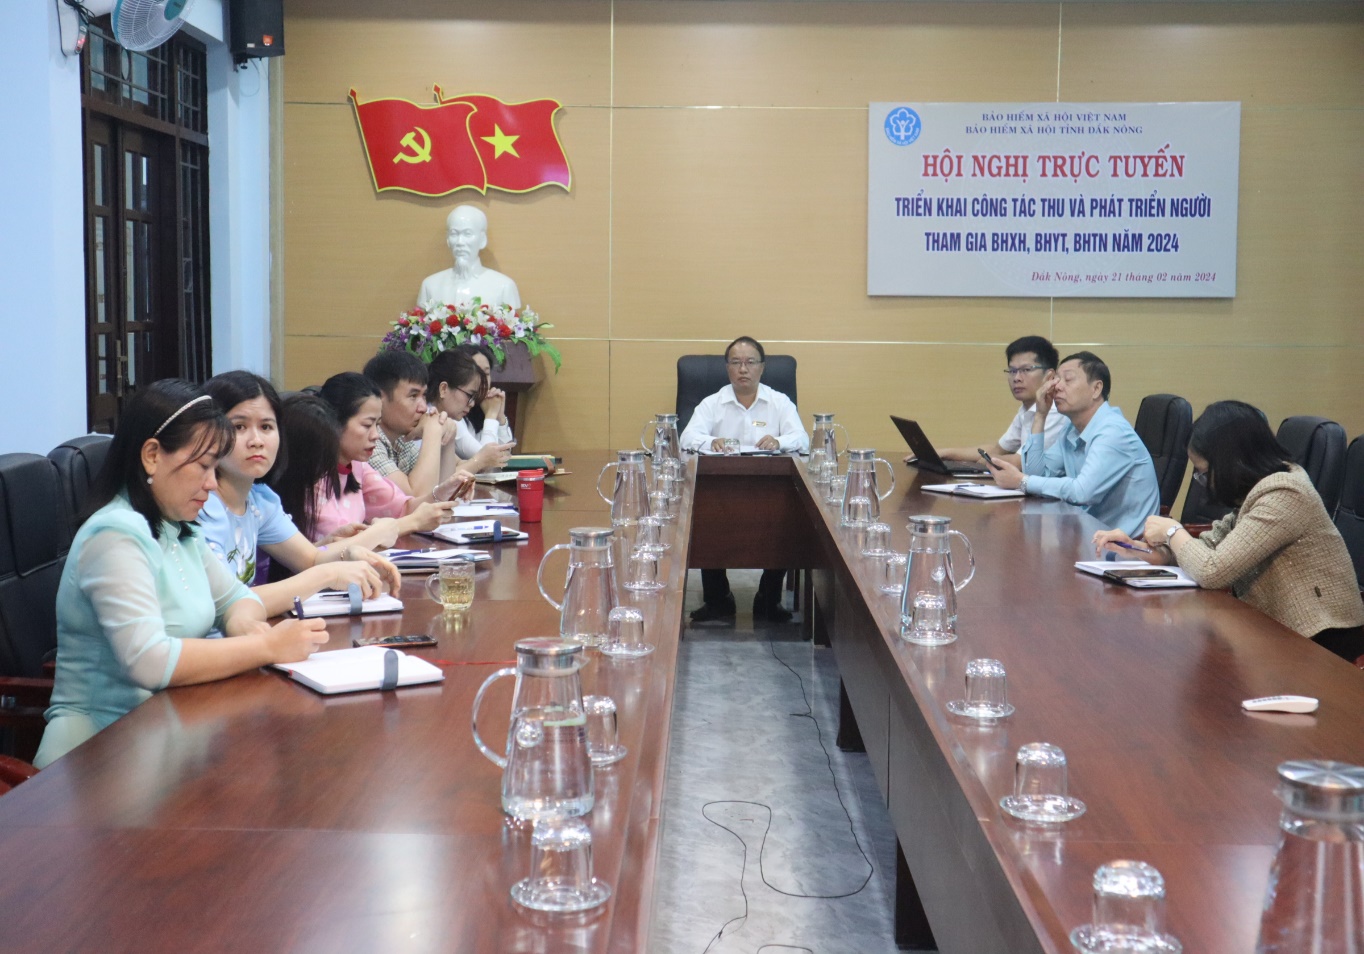 Bảo hiểm xã hội tỉnh Đắk Nông dự Hội nghị trực tuyến triển khai công  công tác thu và phát triển người tham gia BHXH, BHYT, BHTN năm 2024